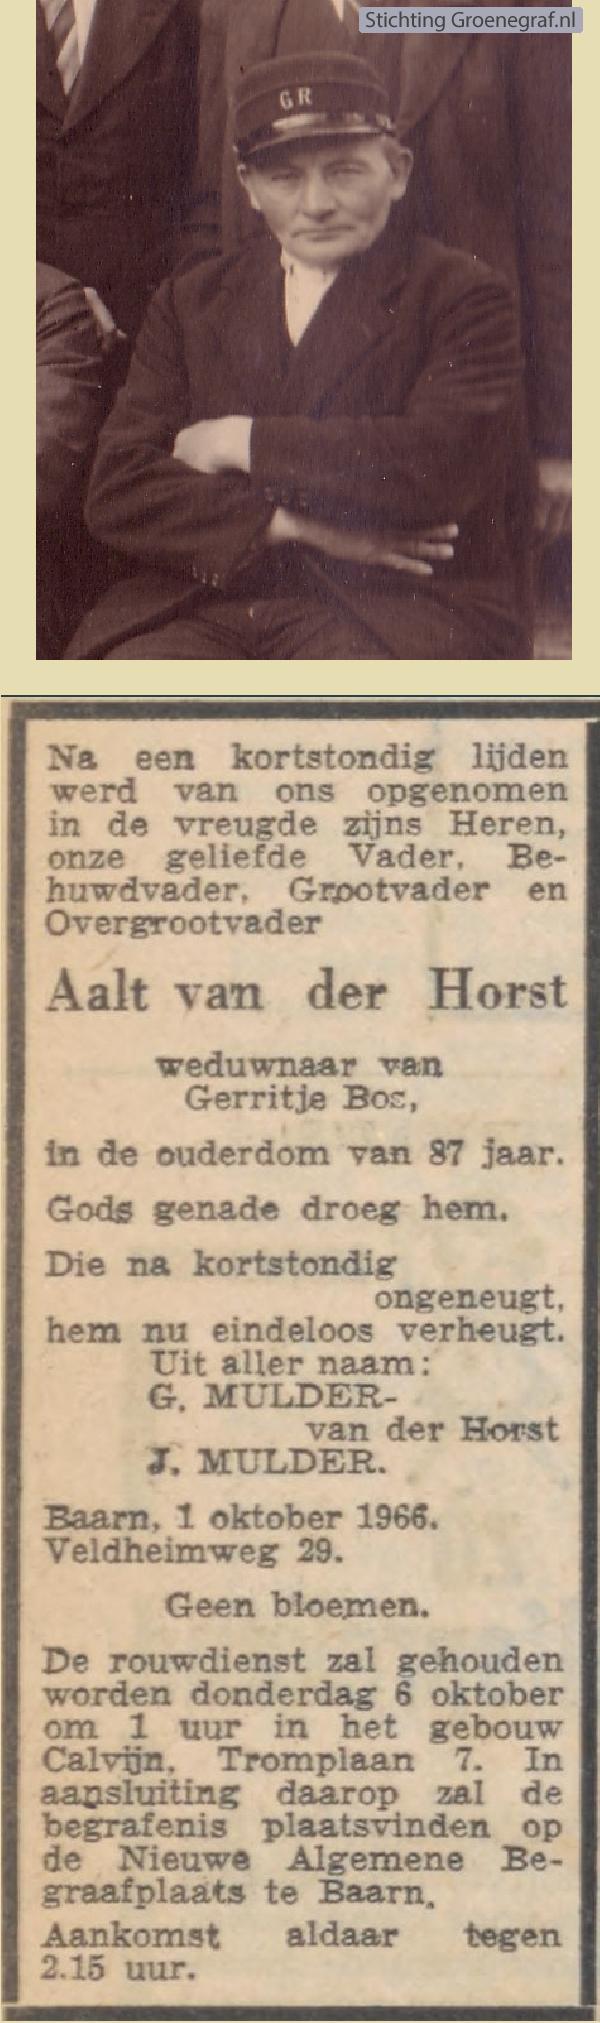 Overlijdensscan Aalt van der Horst